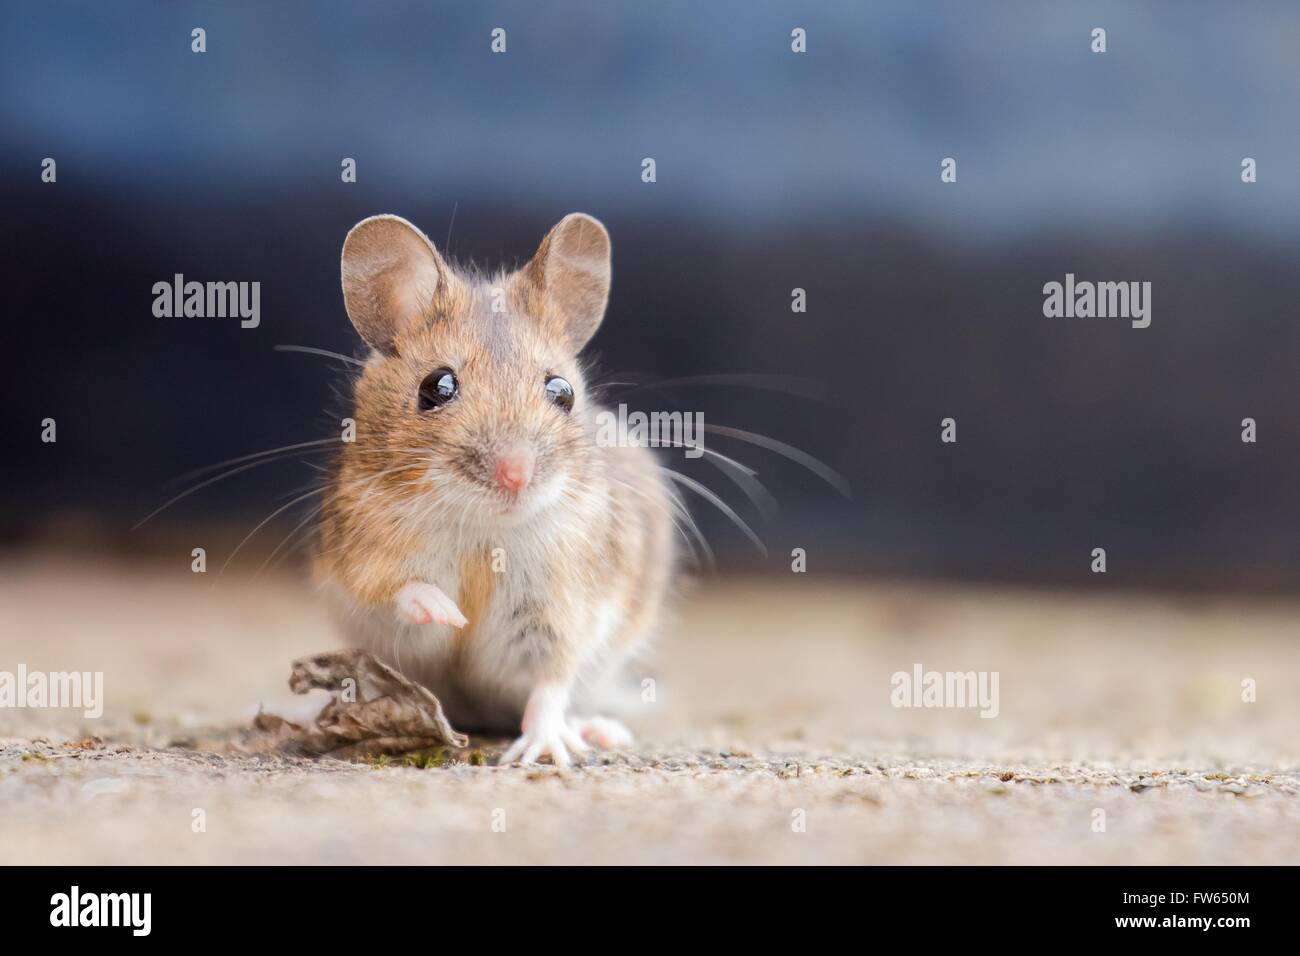 Casa del ratón (Mus musculus), Retrato, Hesse, Alemania Foto de stock